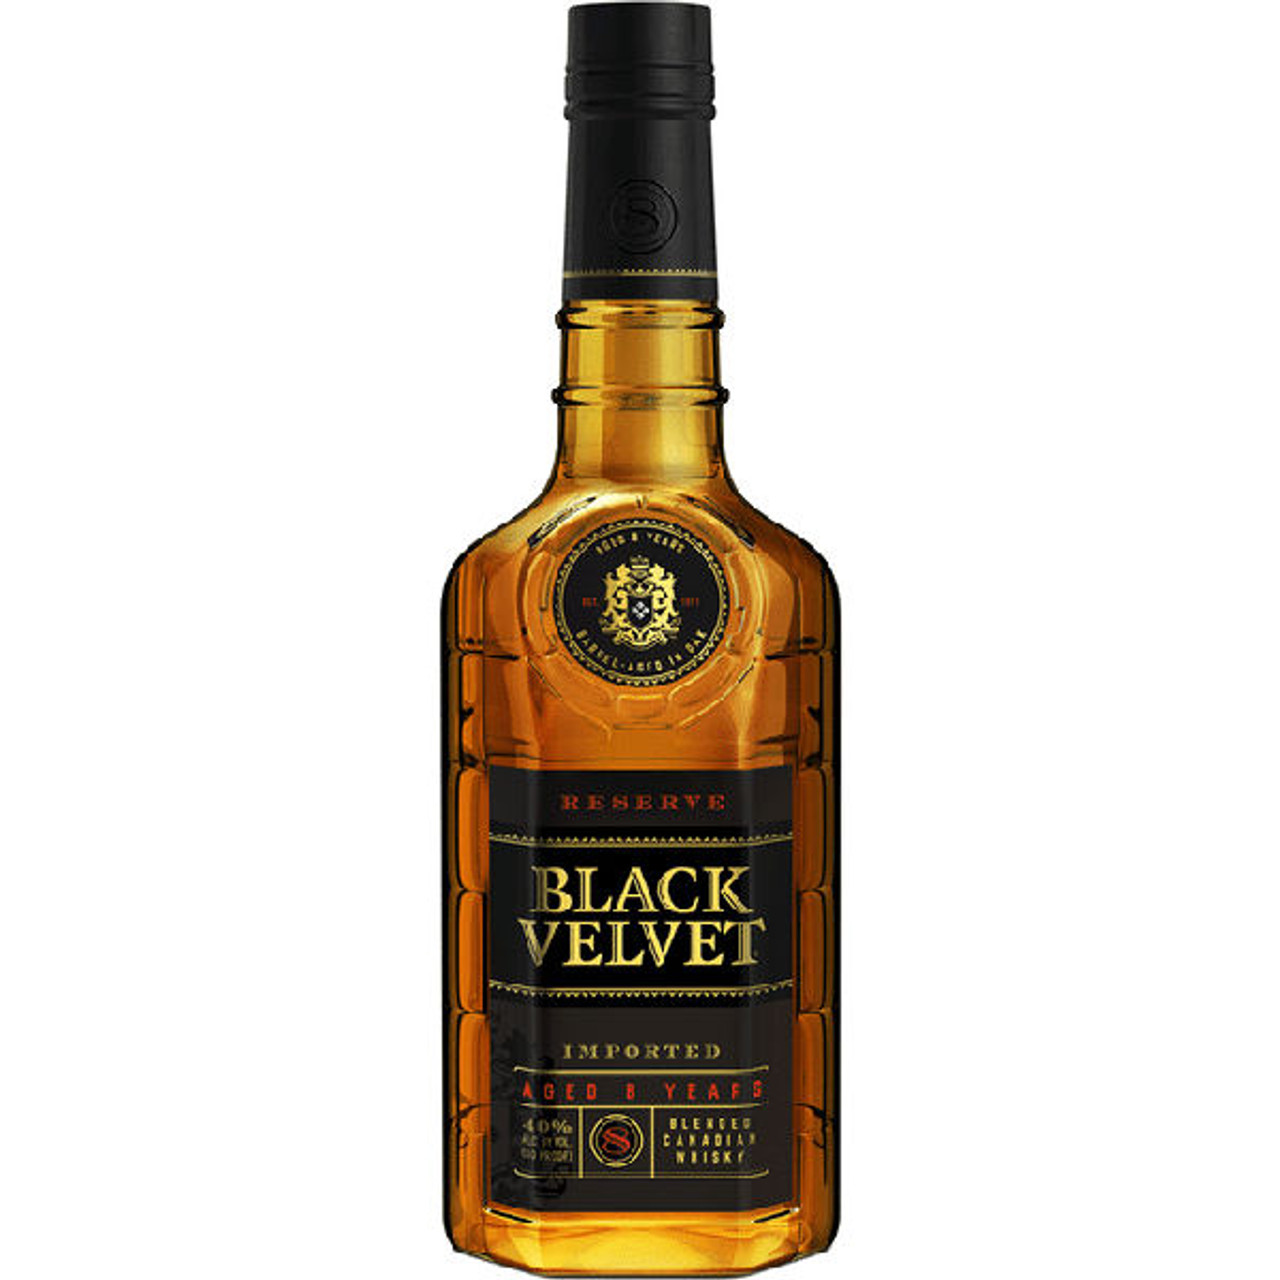 Black Velvet 8 Year Old Reserve Blended Canadian Whisky 750ml